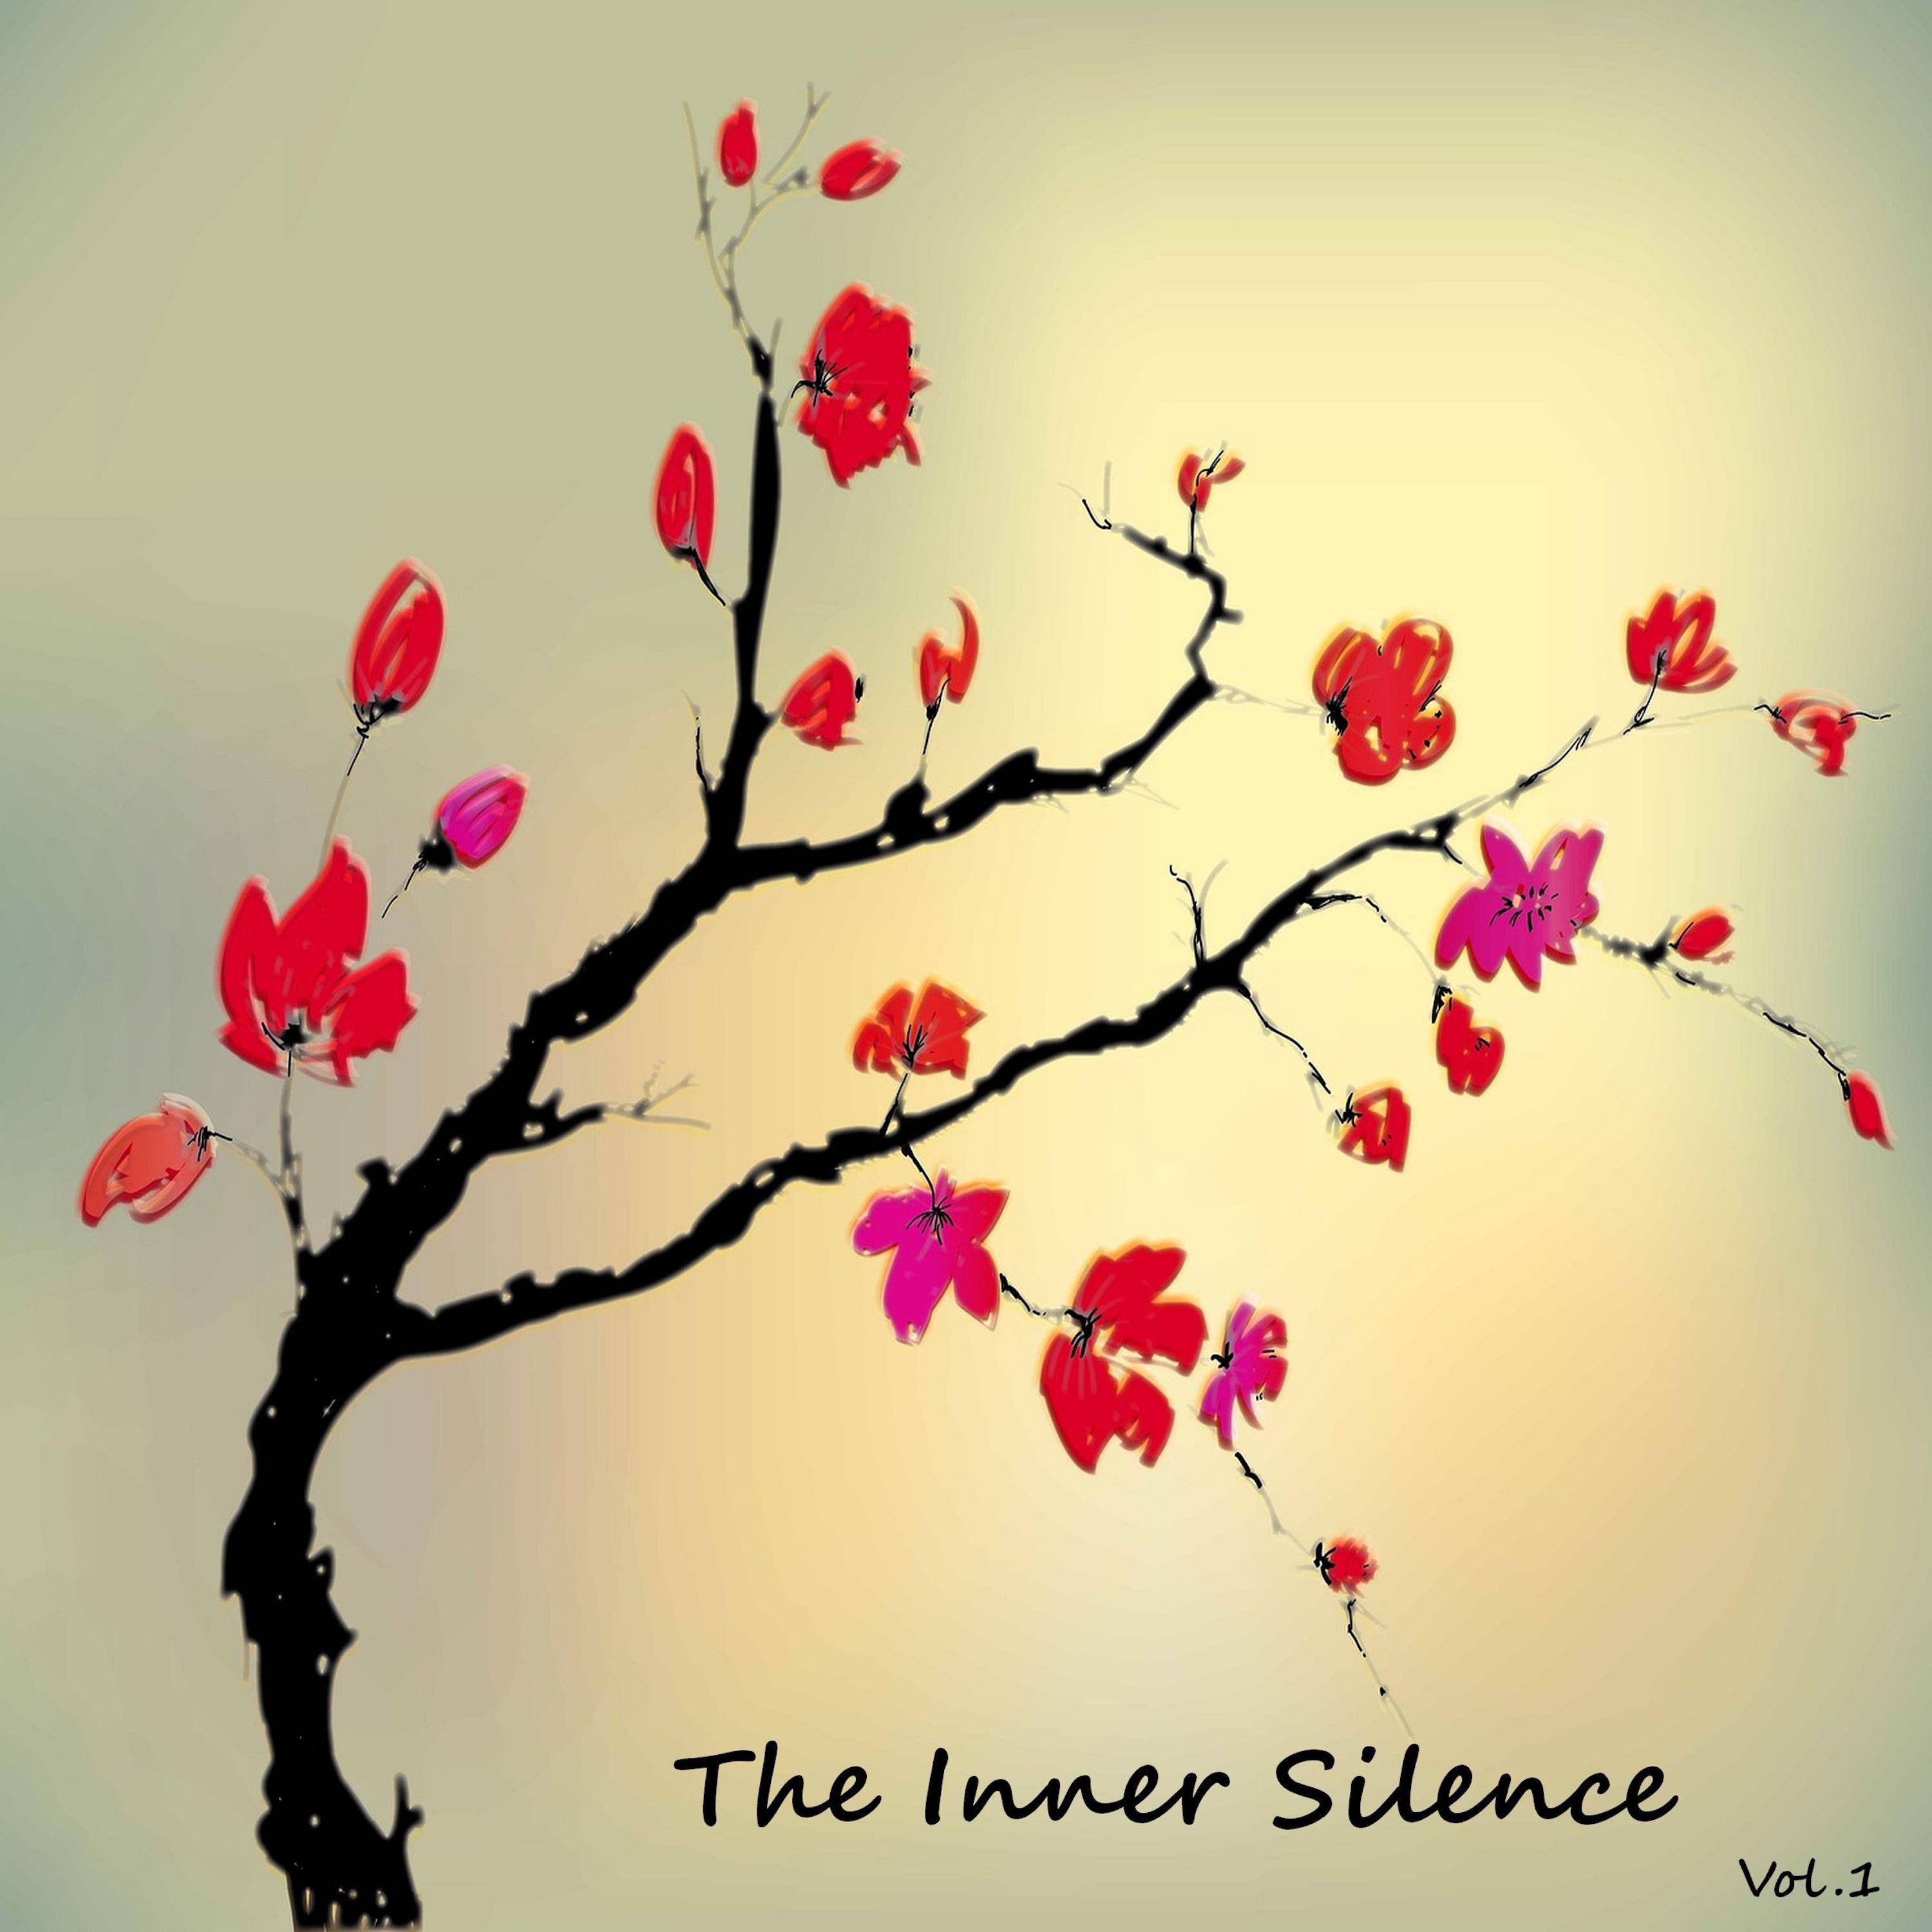 The Inner Silence, Vol. 1